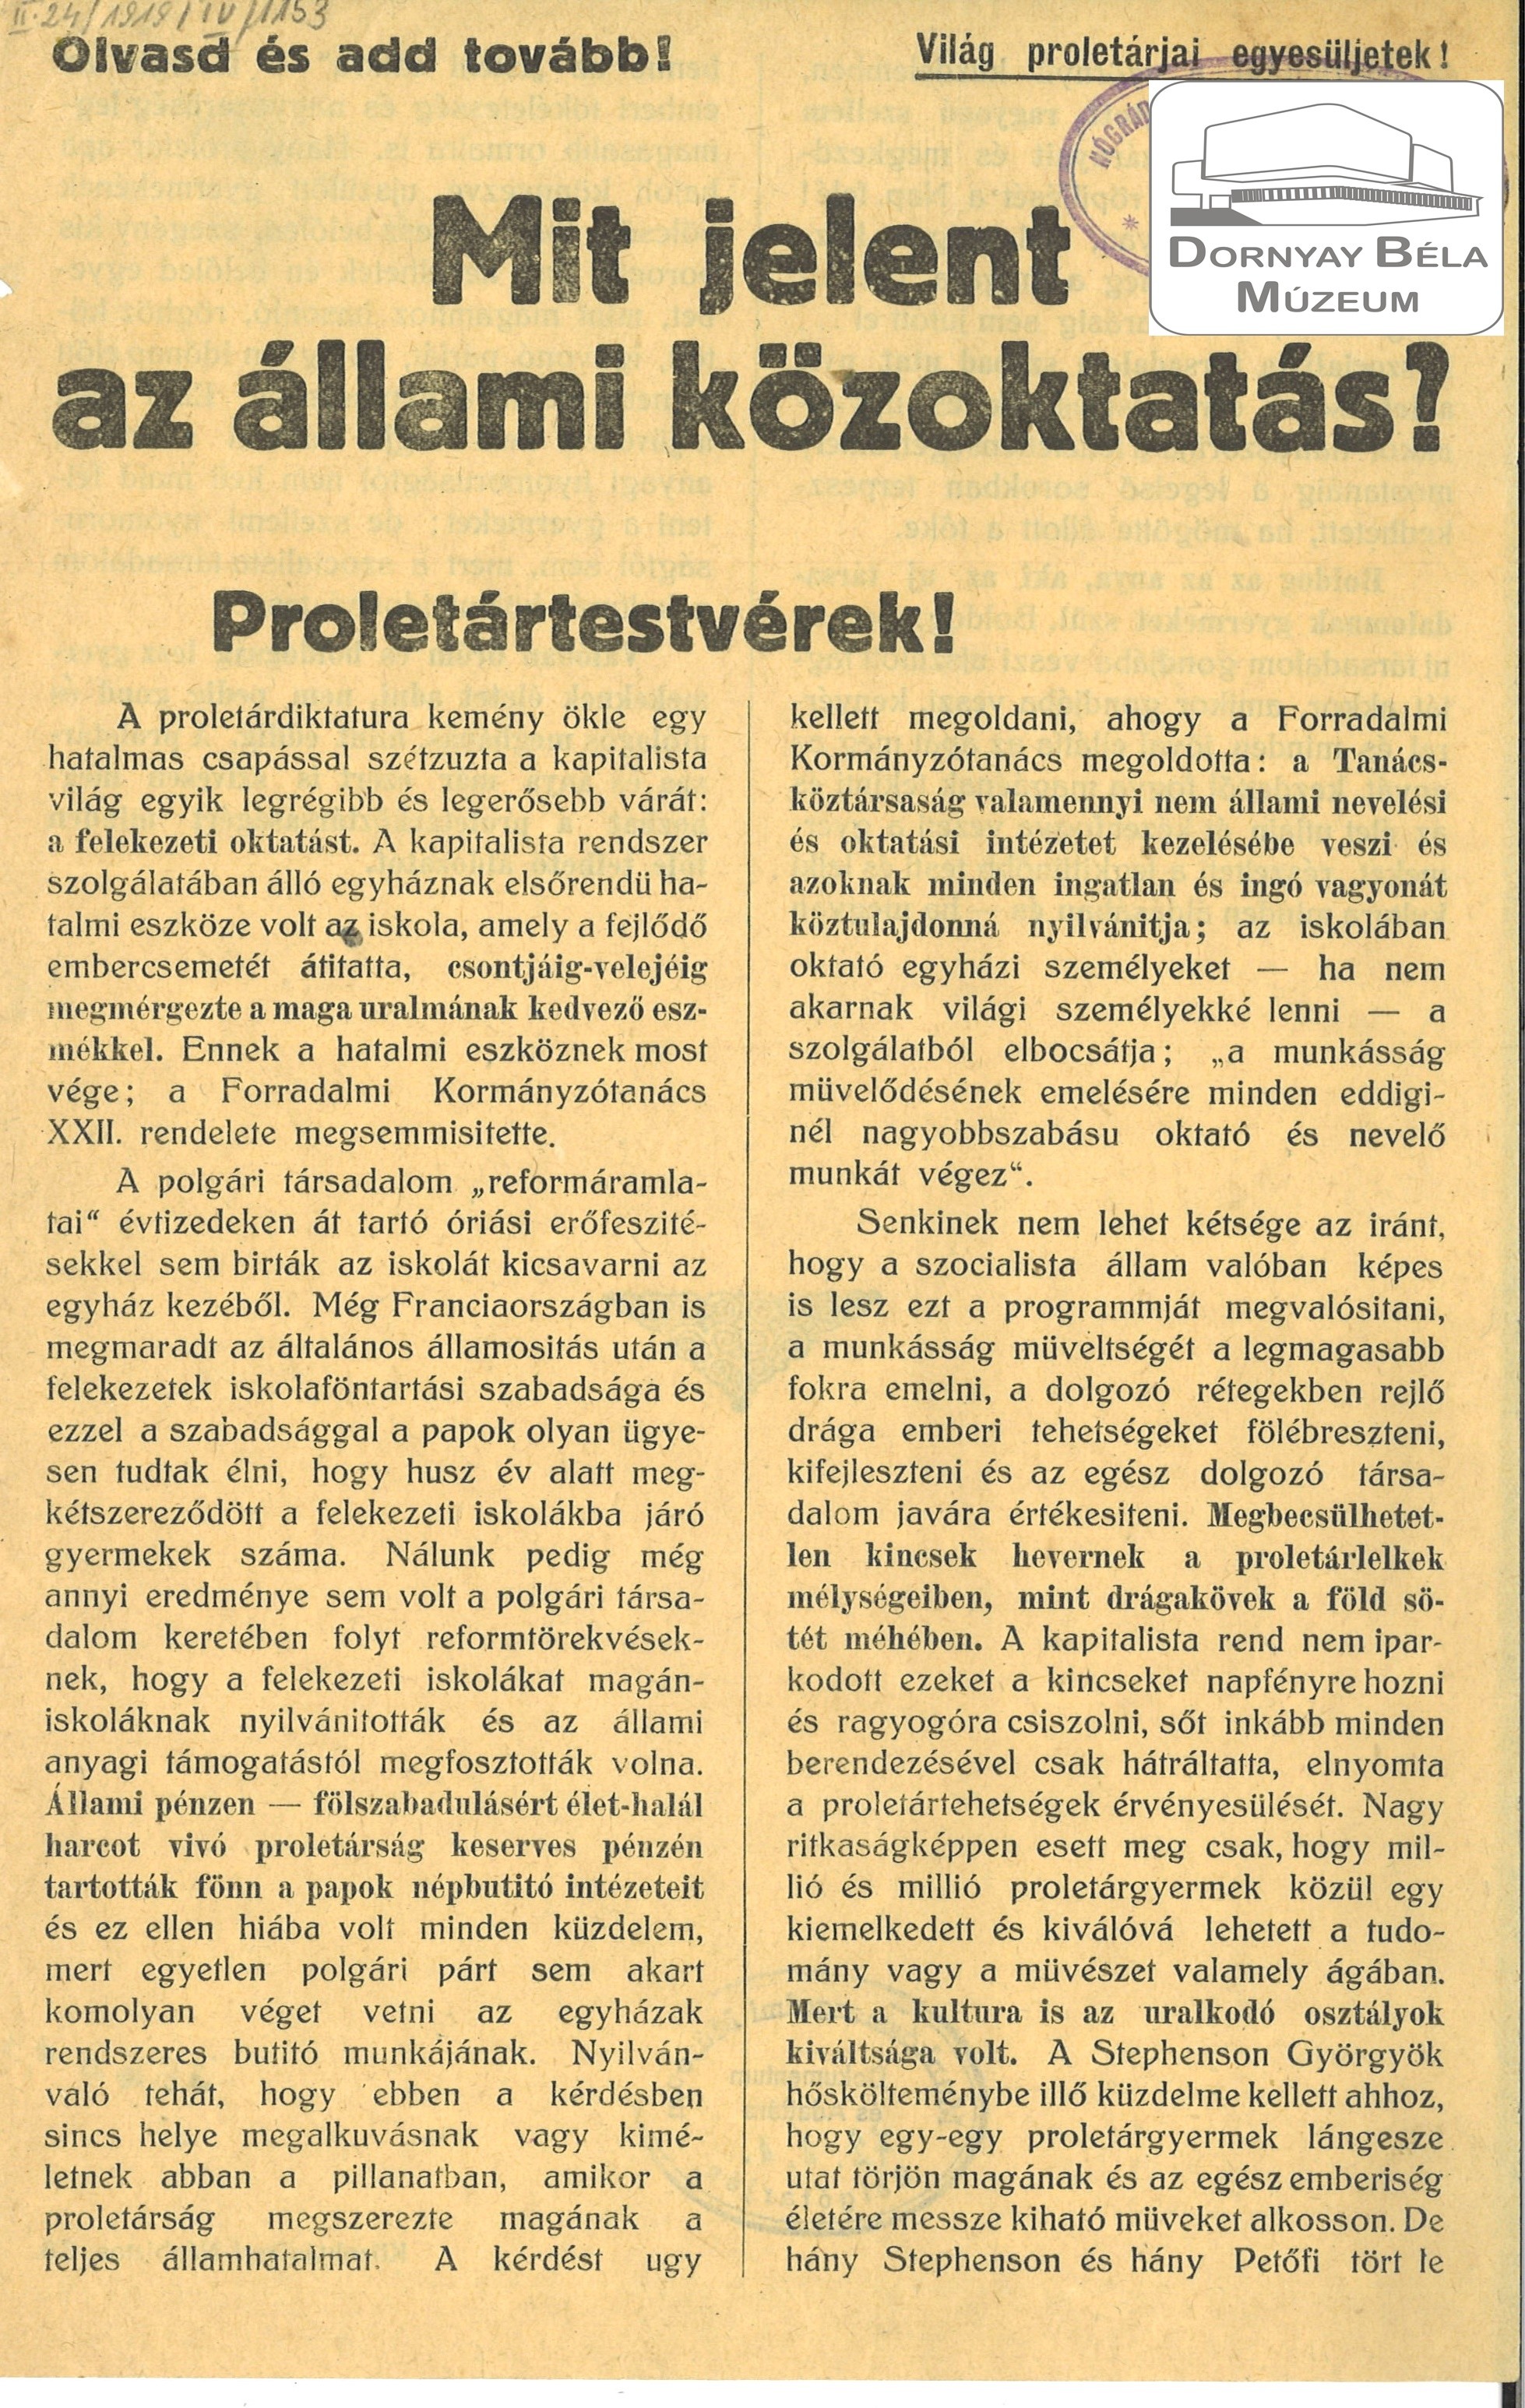 Tanácsköztársaság röplap (Dornyay Béla Múzeum, Salgótarján CC BY-NC-SA)